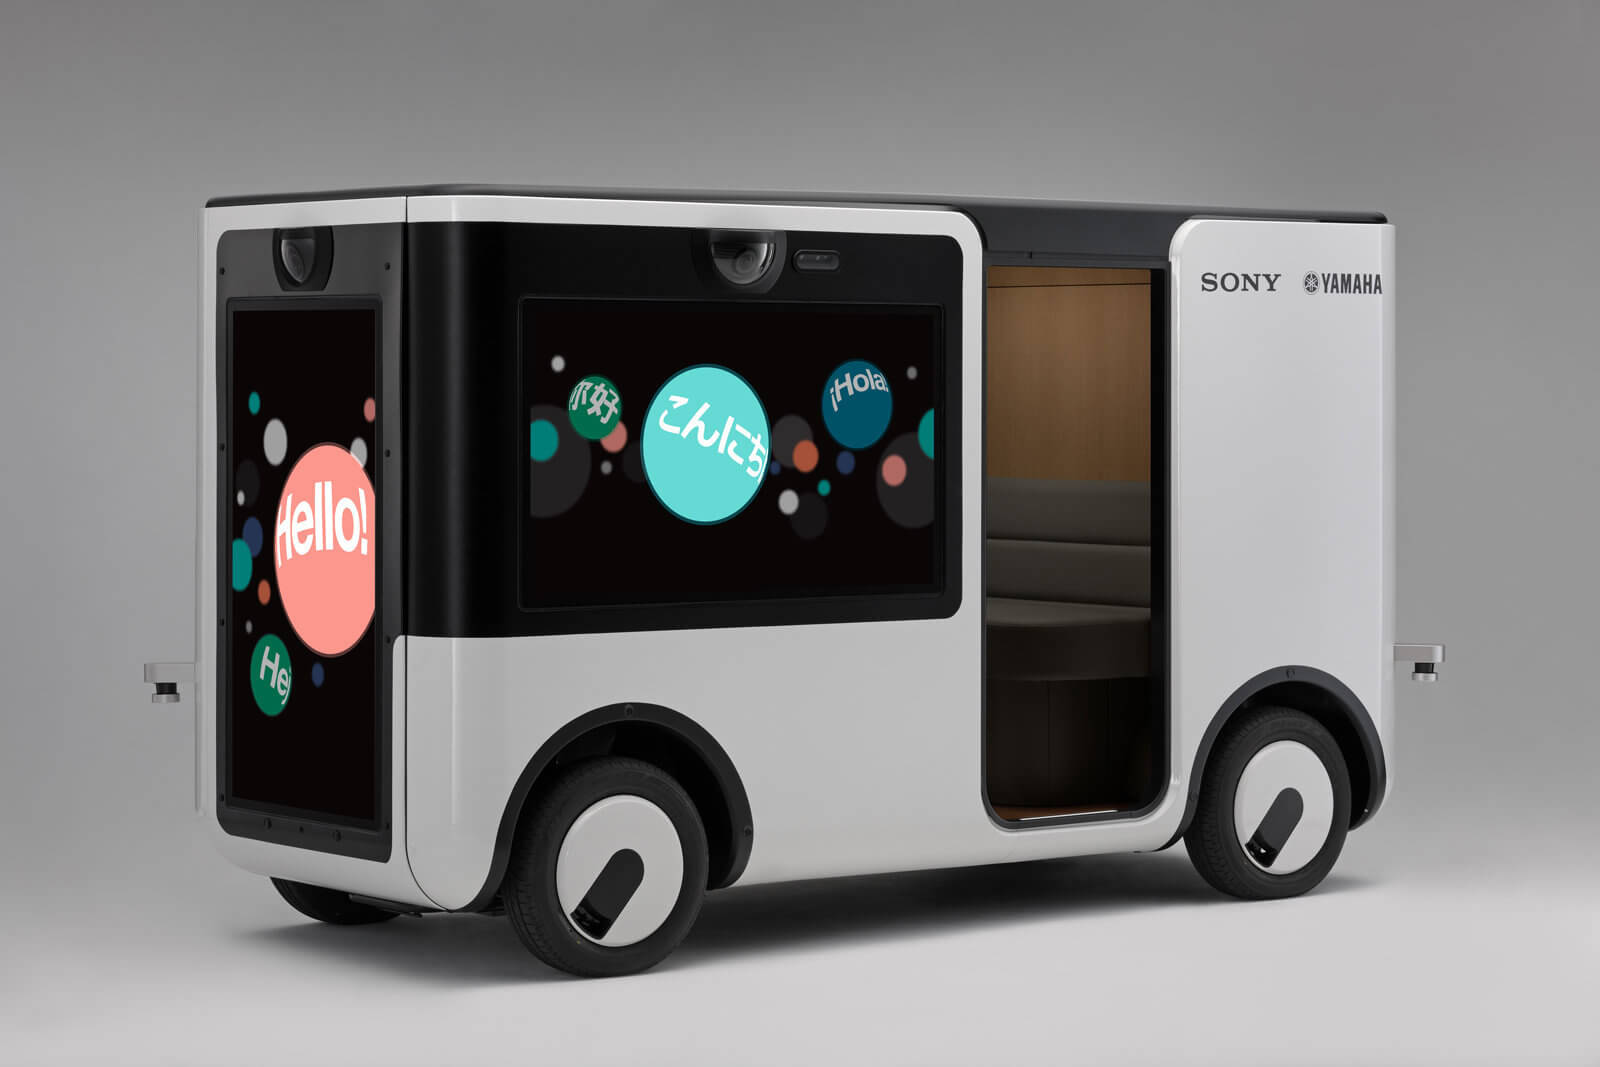 Sony ve Yamaha sunulan insansız araç, artırılmış gerçeklik özelliği ile